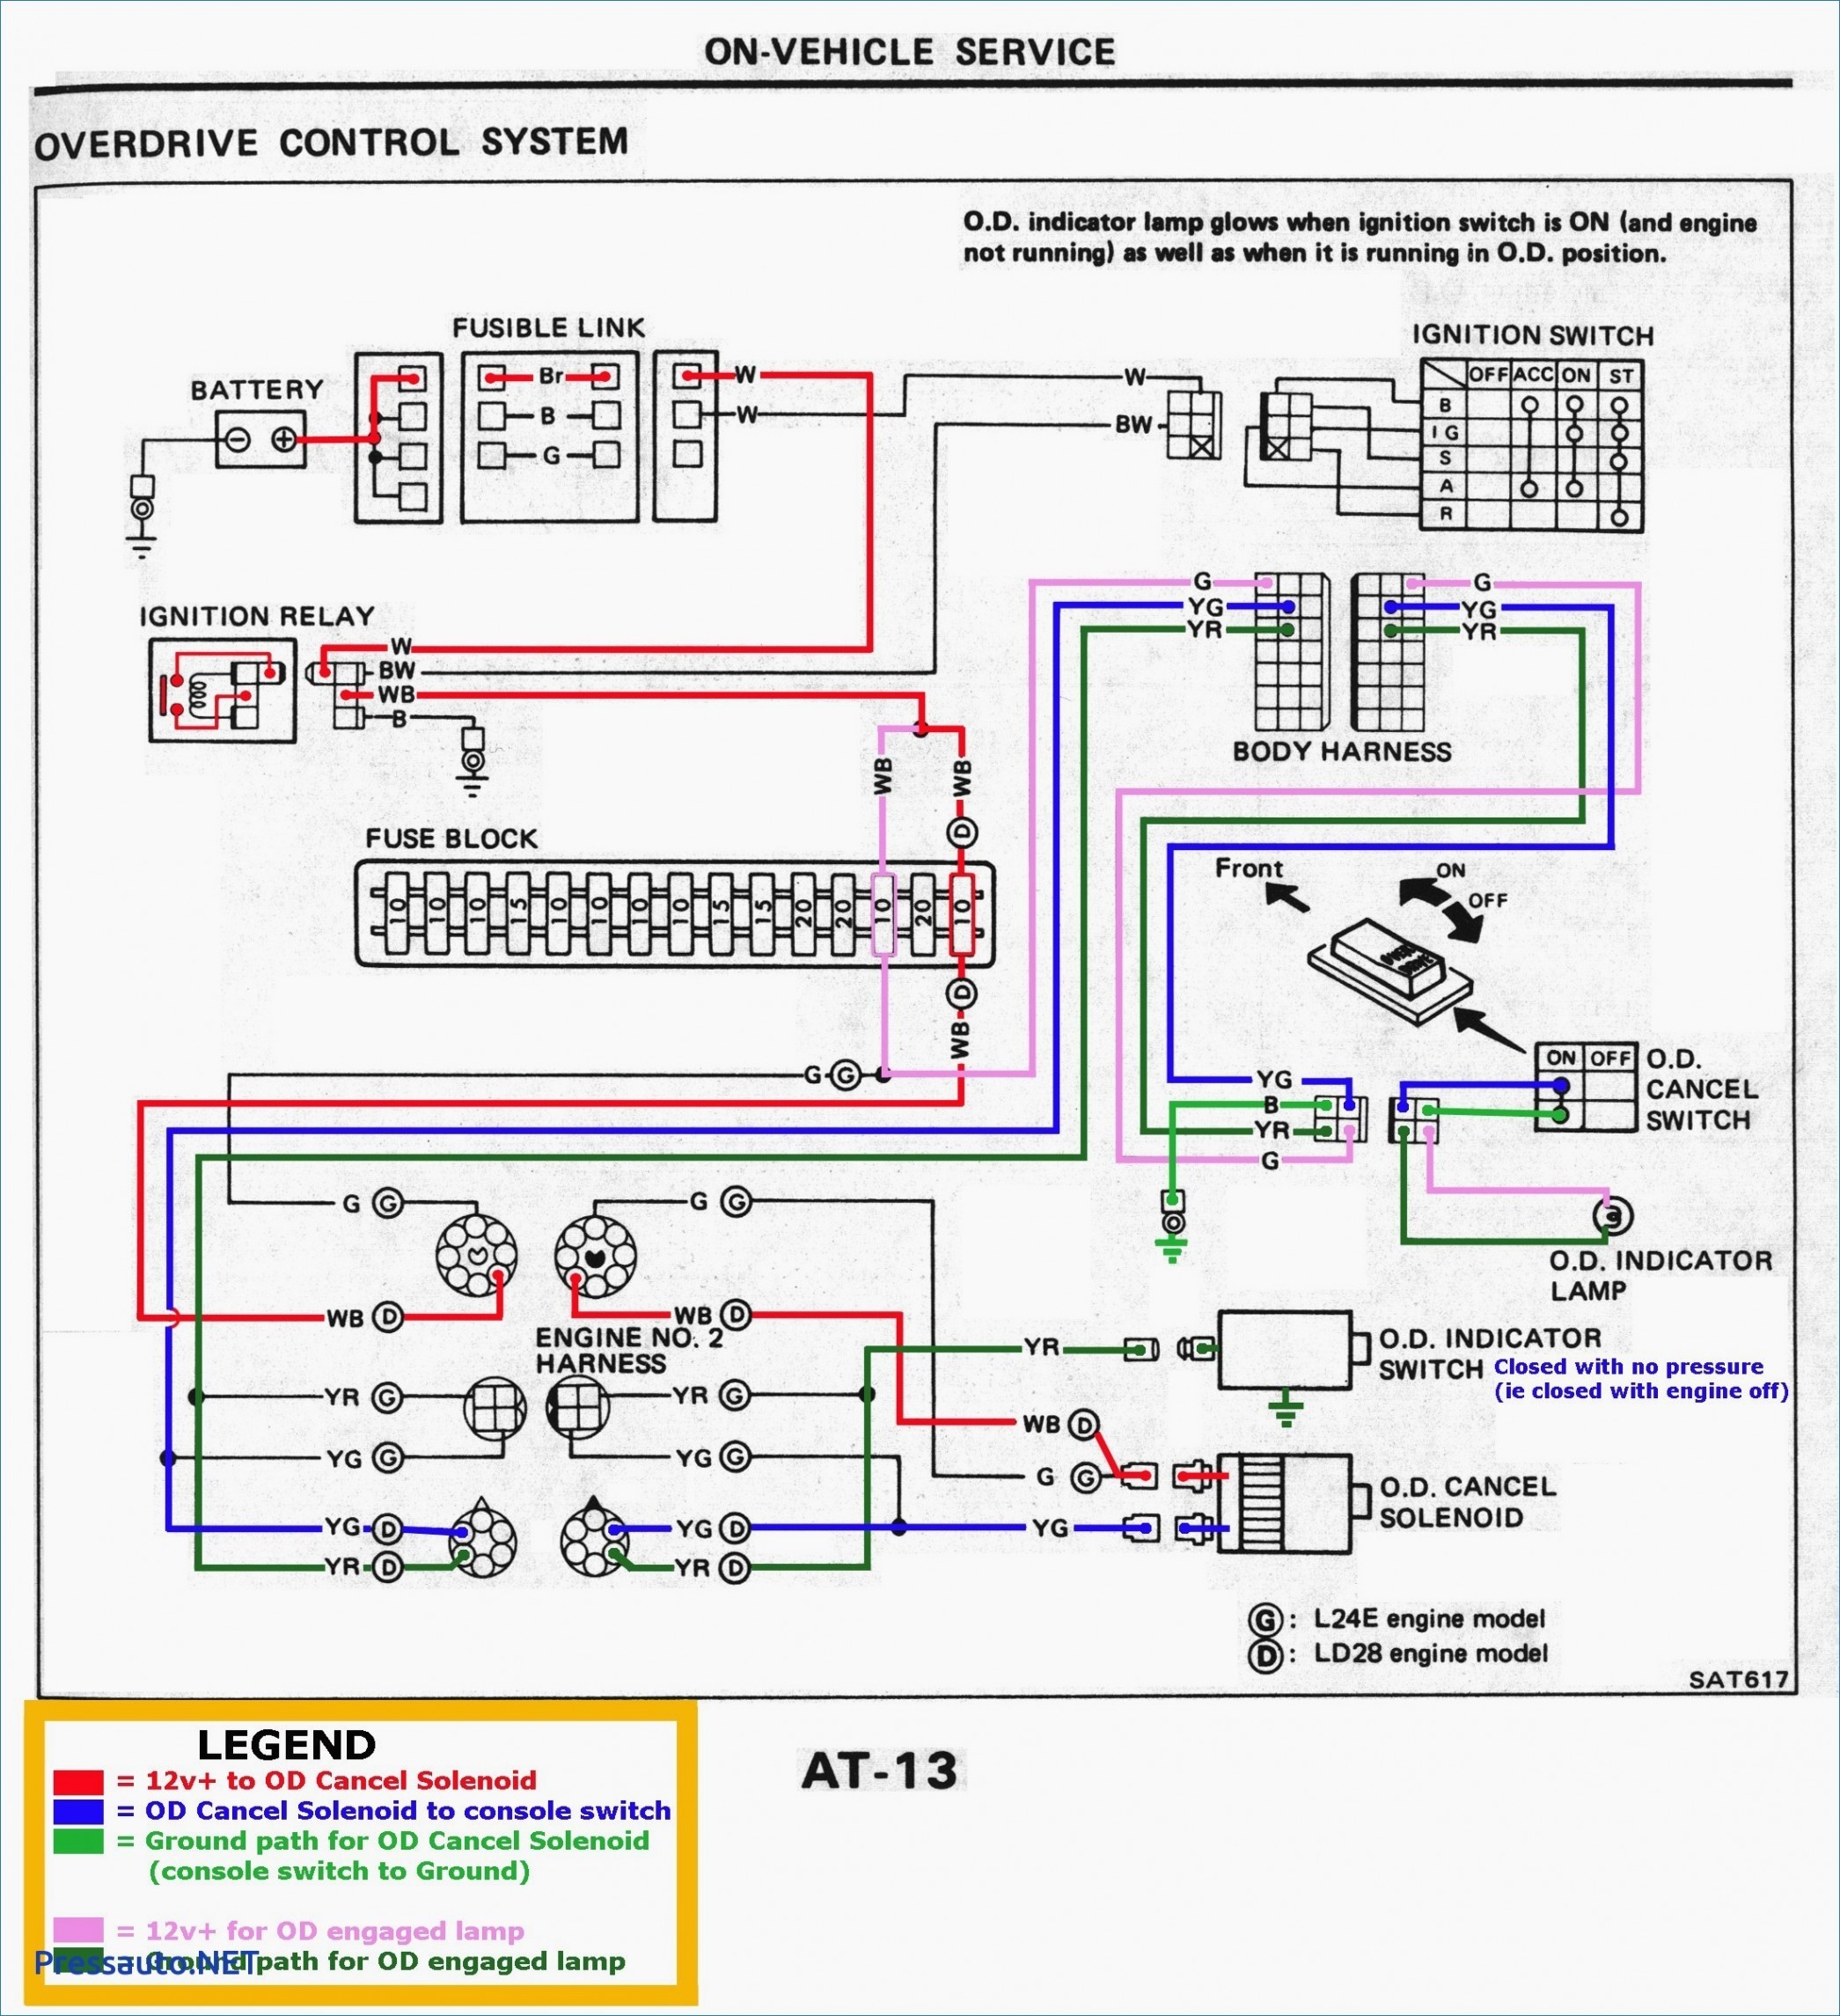 1997 ford F150 Wiring Diagram 1997 ford F150 Fuse Box Diagram Under Dash – Fuse Block Wiring Of 1997 ford F150 Wiring Diagram